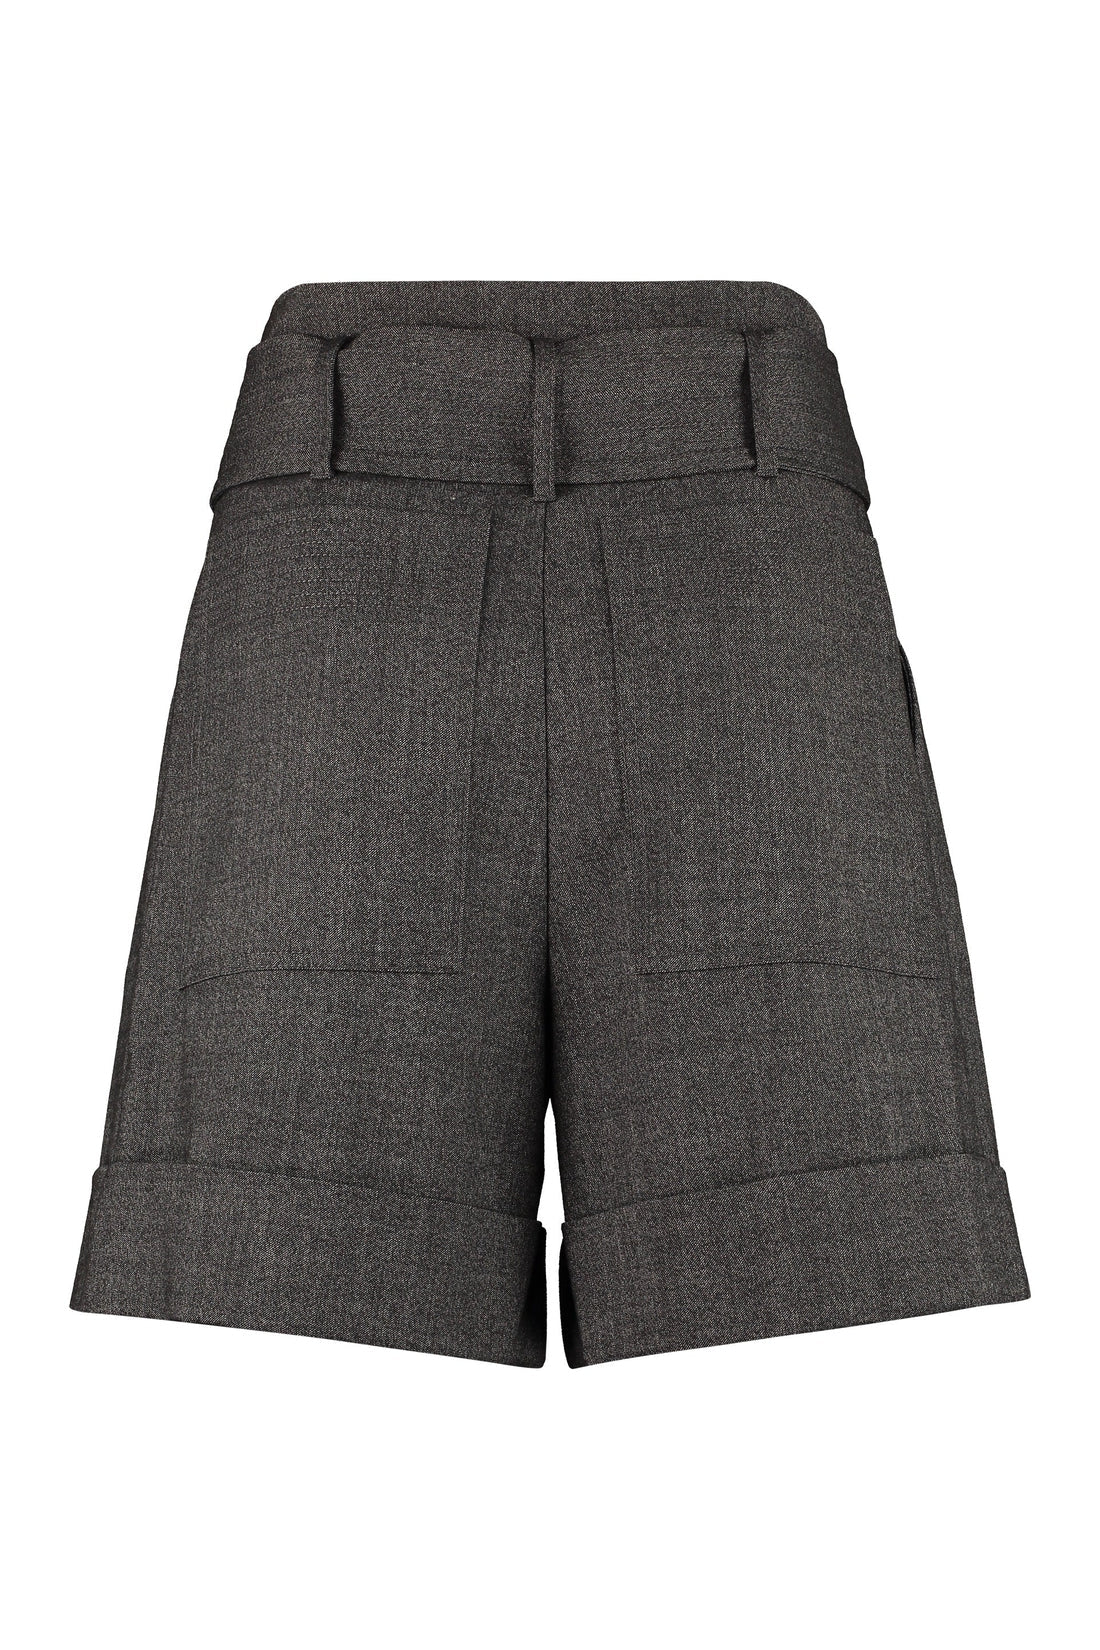 Parosh-OUTLET-SALE-High waist shorts-ARCHIVIST